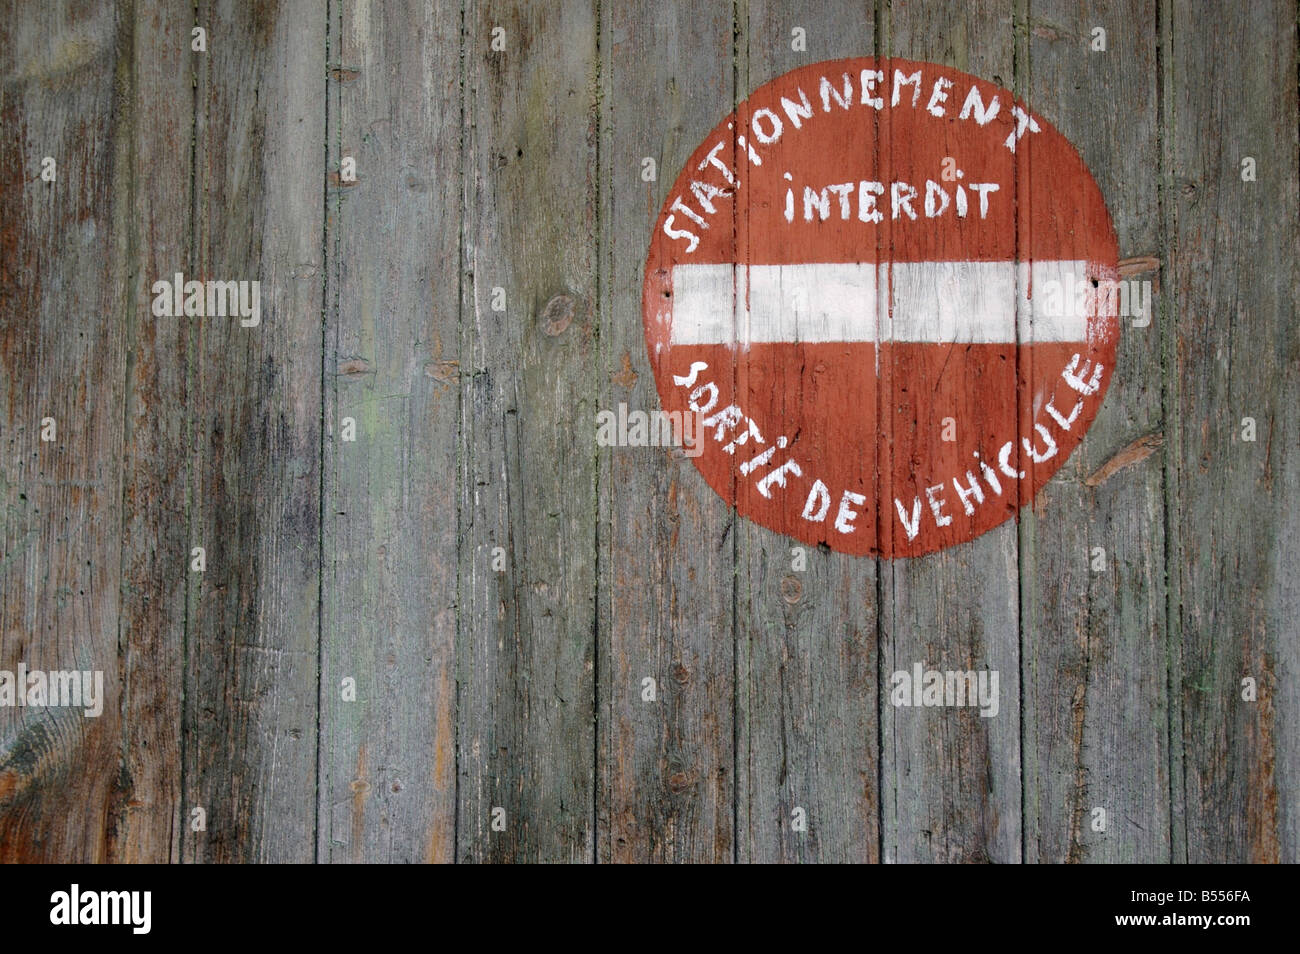 Stationnement Interdit sortie de vehicule sign Stock Photo - Alamy